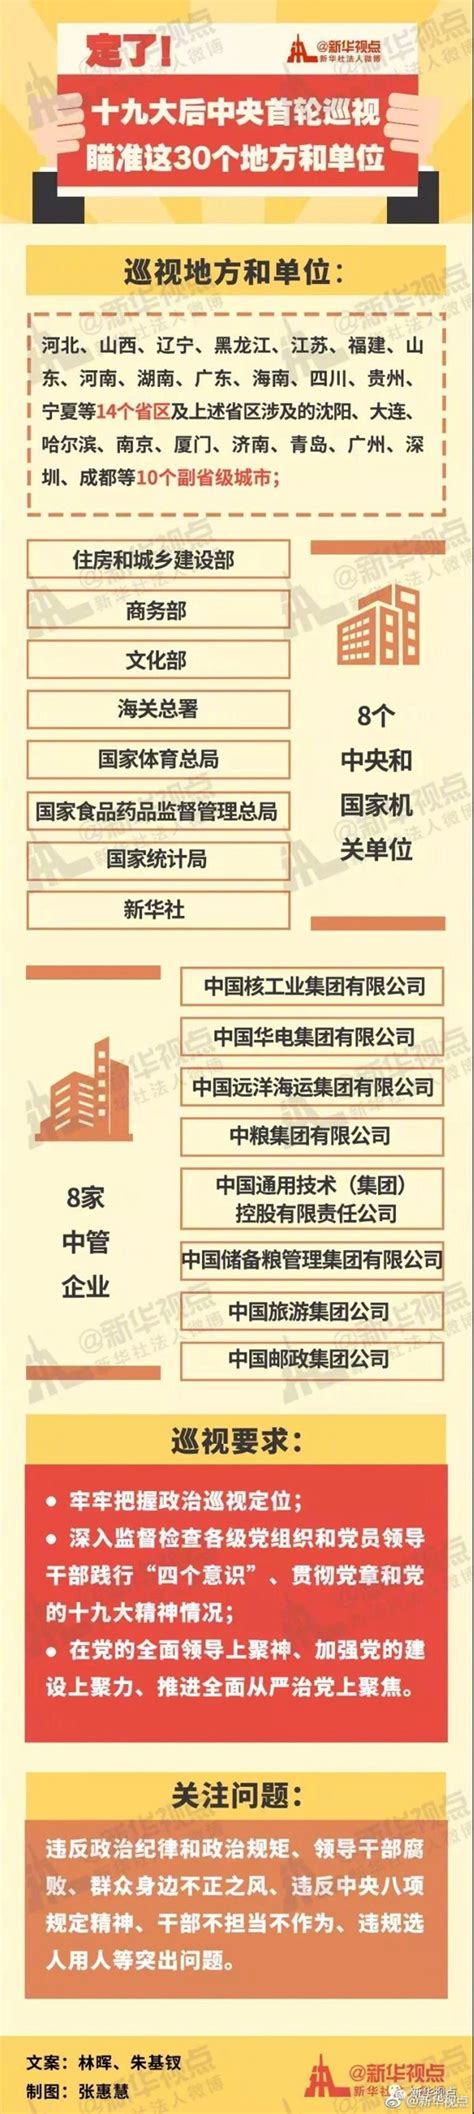 企业行动 - 湖南国企党建学习贯彻党的十九大精神 - 华声在线